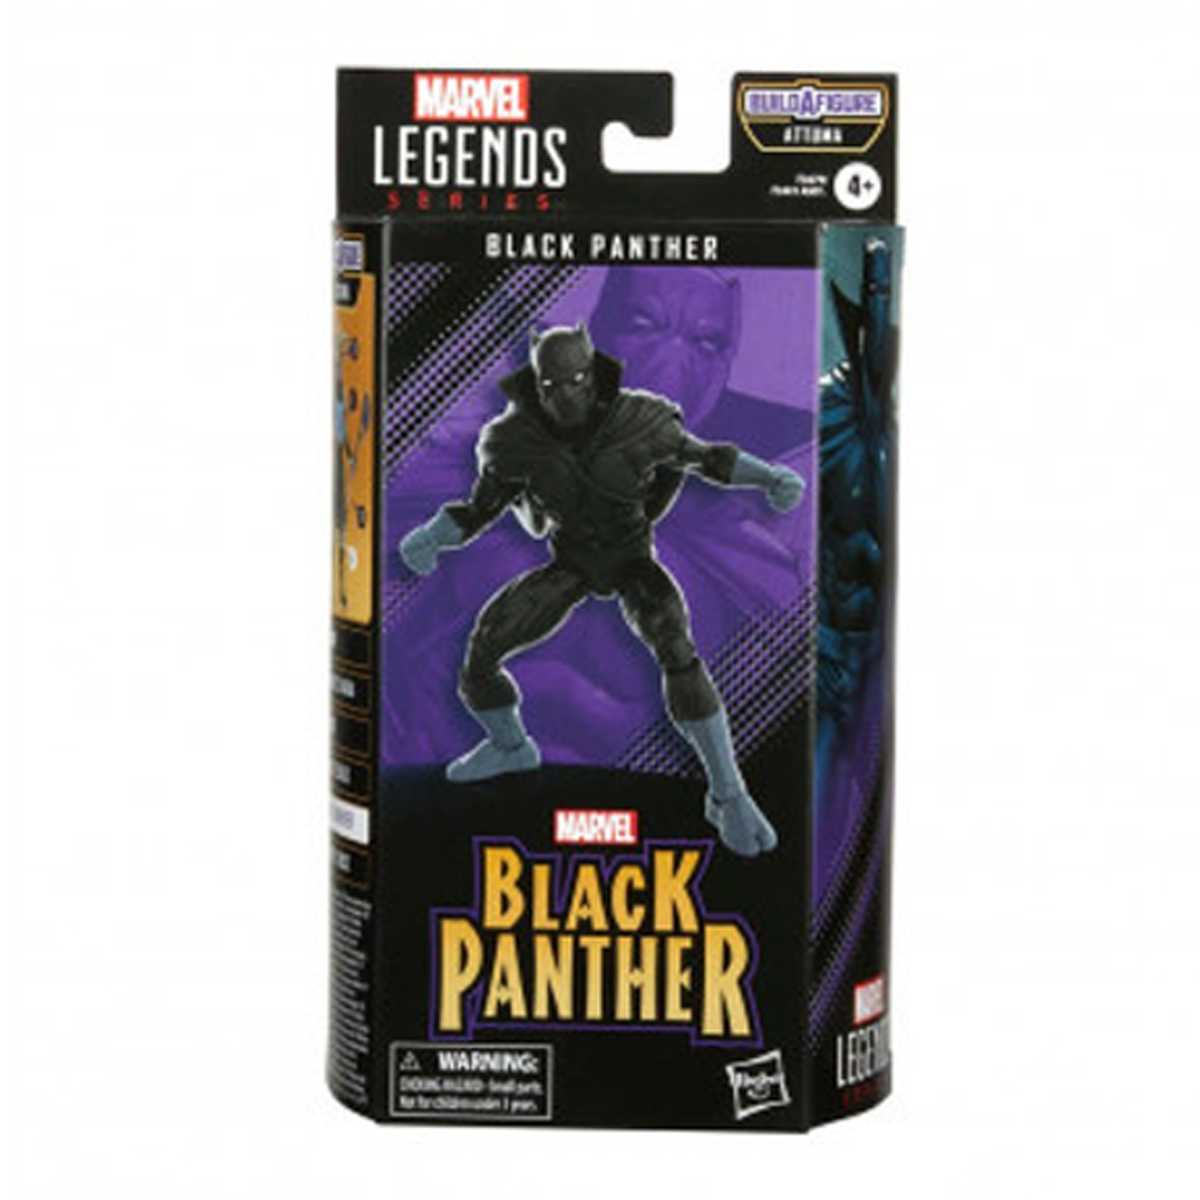 Black Panther Marverl Legends